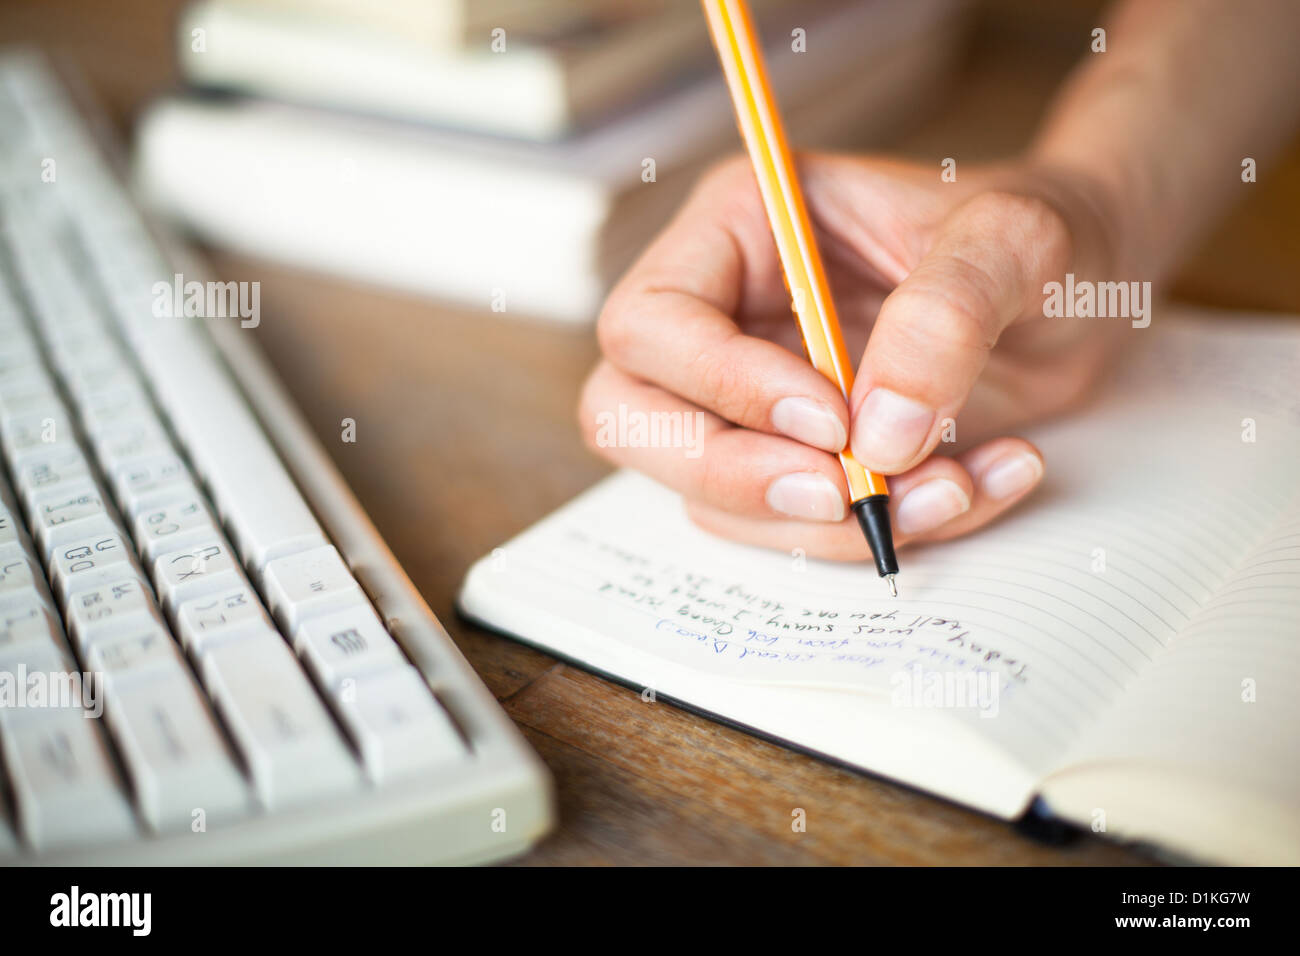 Foto di mani scrive una penna in un notebook, la tastiera del computer e una pila di libri in background Foto Stock